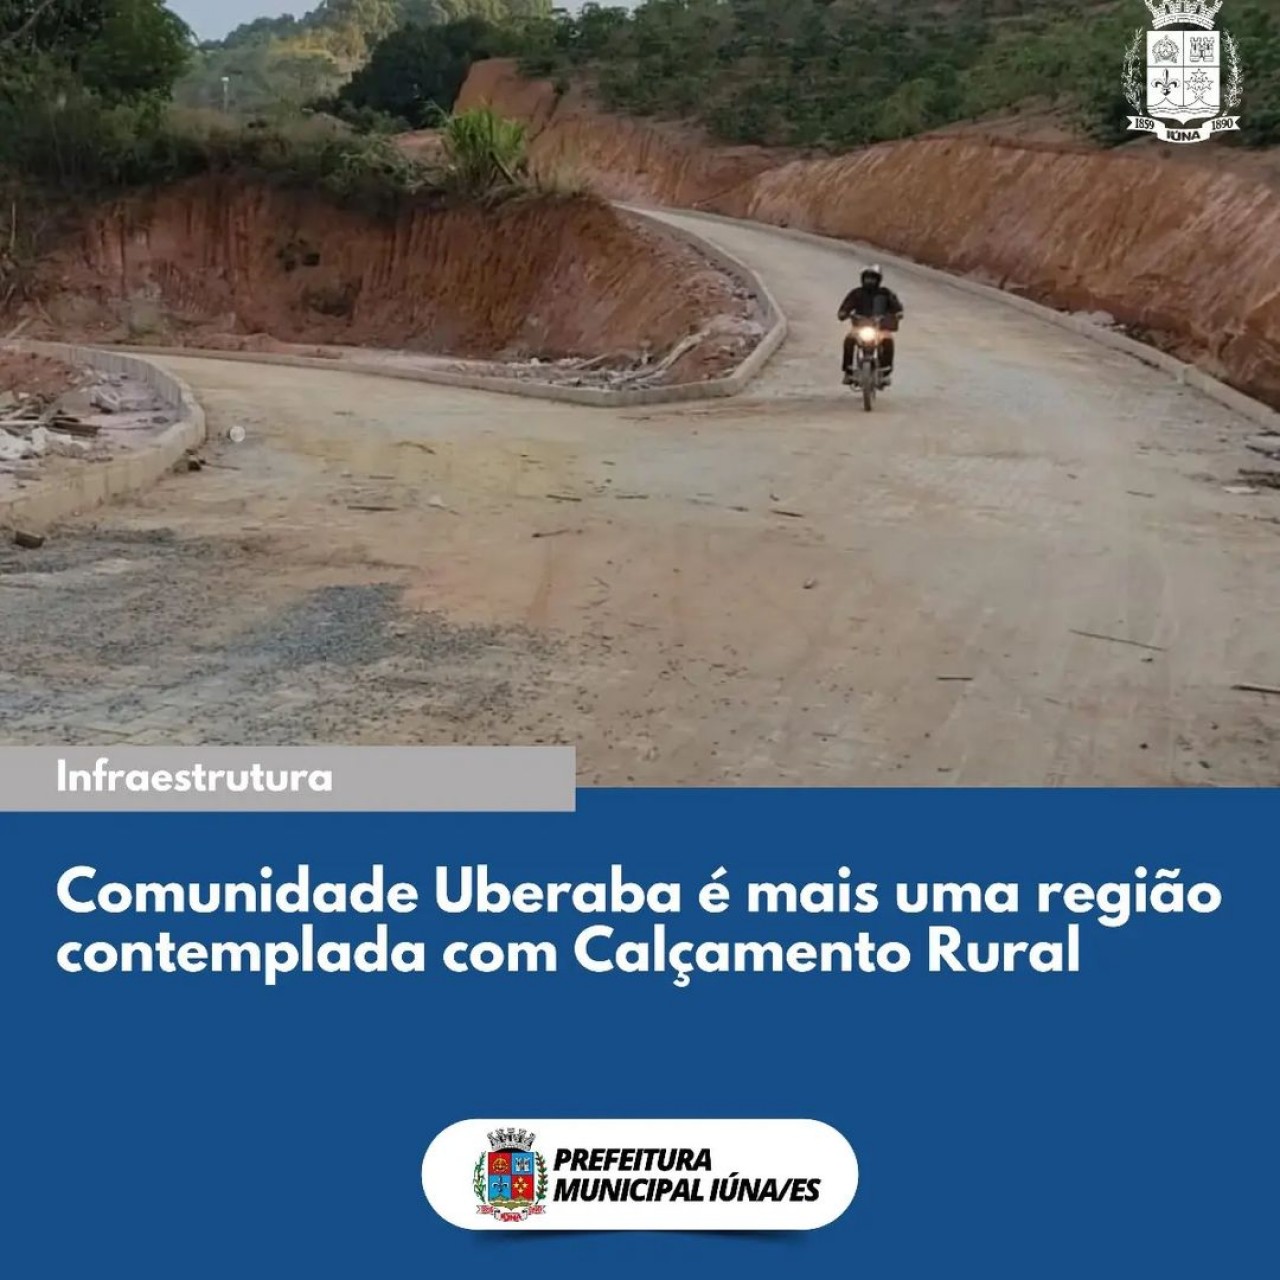 OBRA 100 - A comunidade rural de Uberaba é mais uma região de Iúna com obras de calçamento rural concluída.